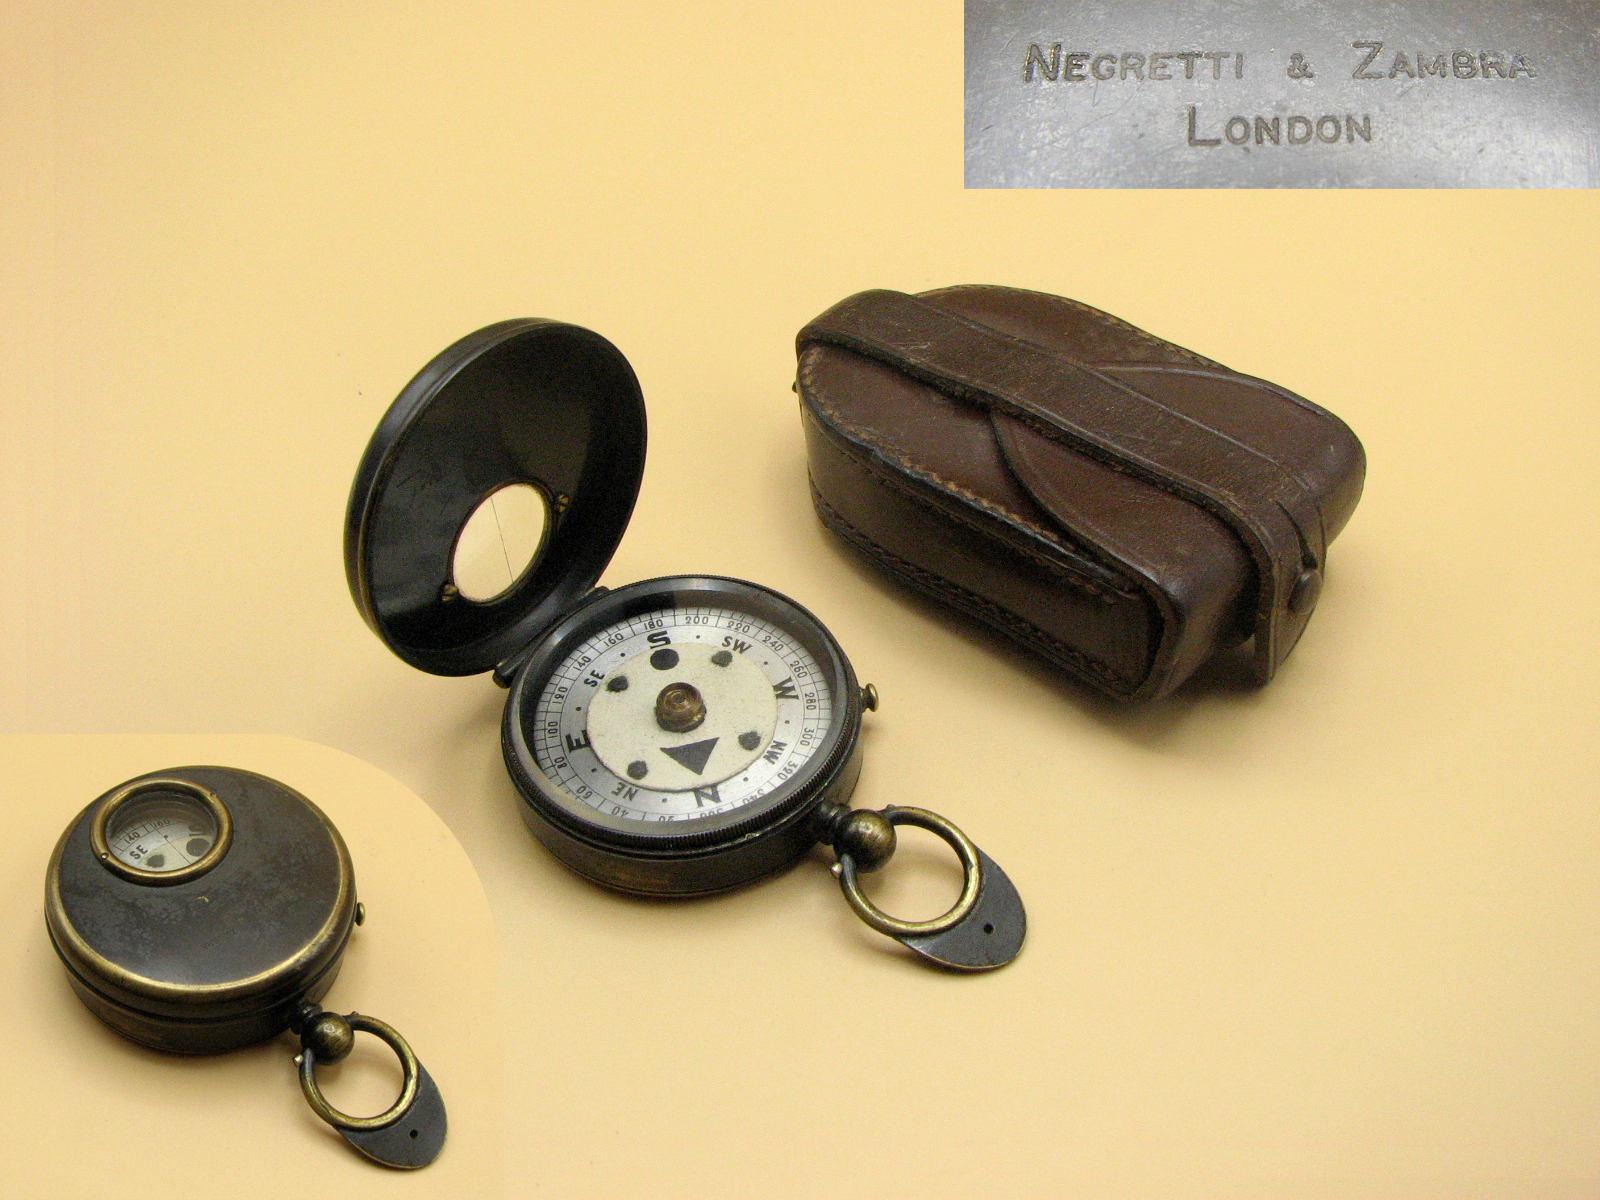 Late 19th century Negretti & Zambra pocket marching compass